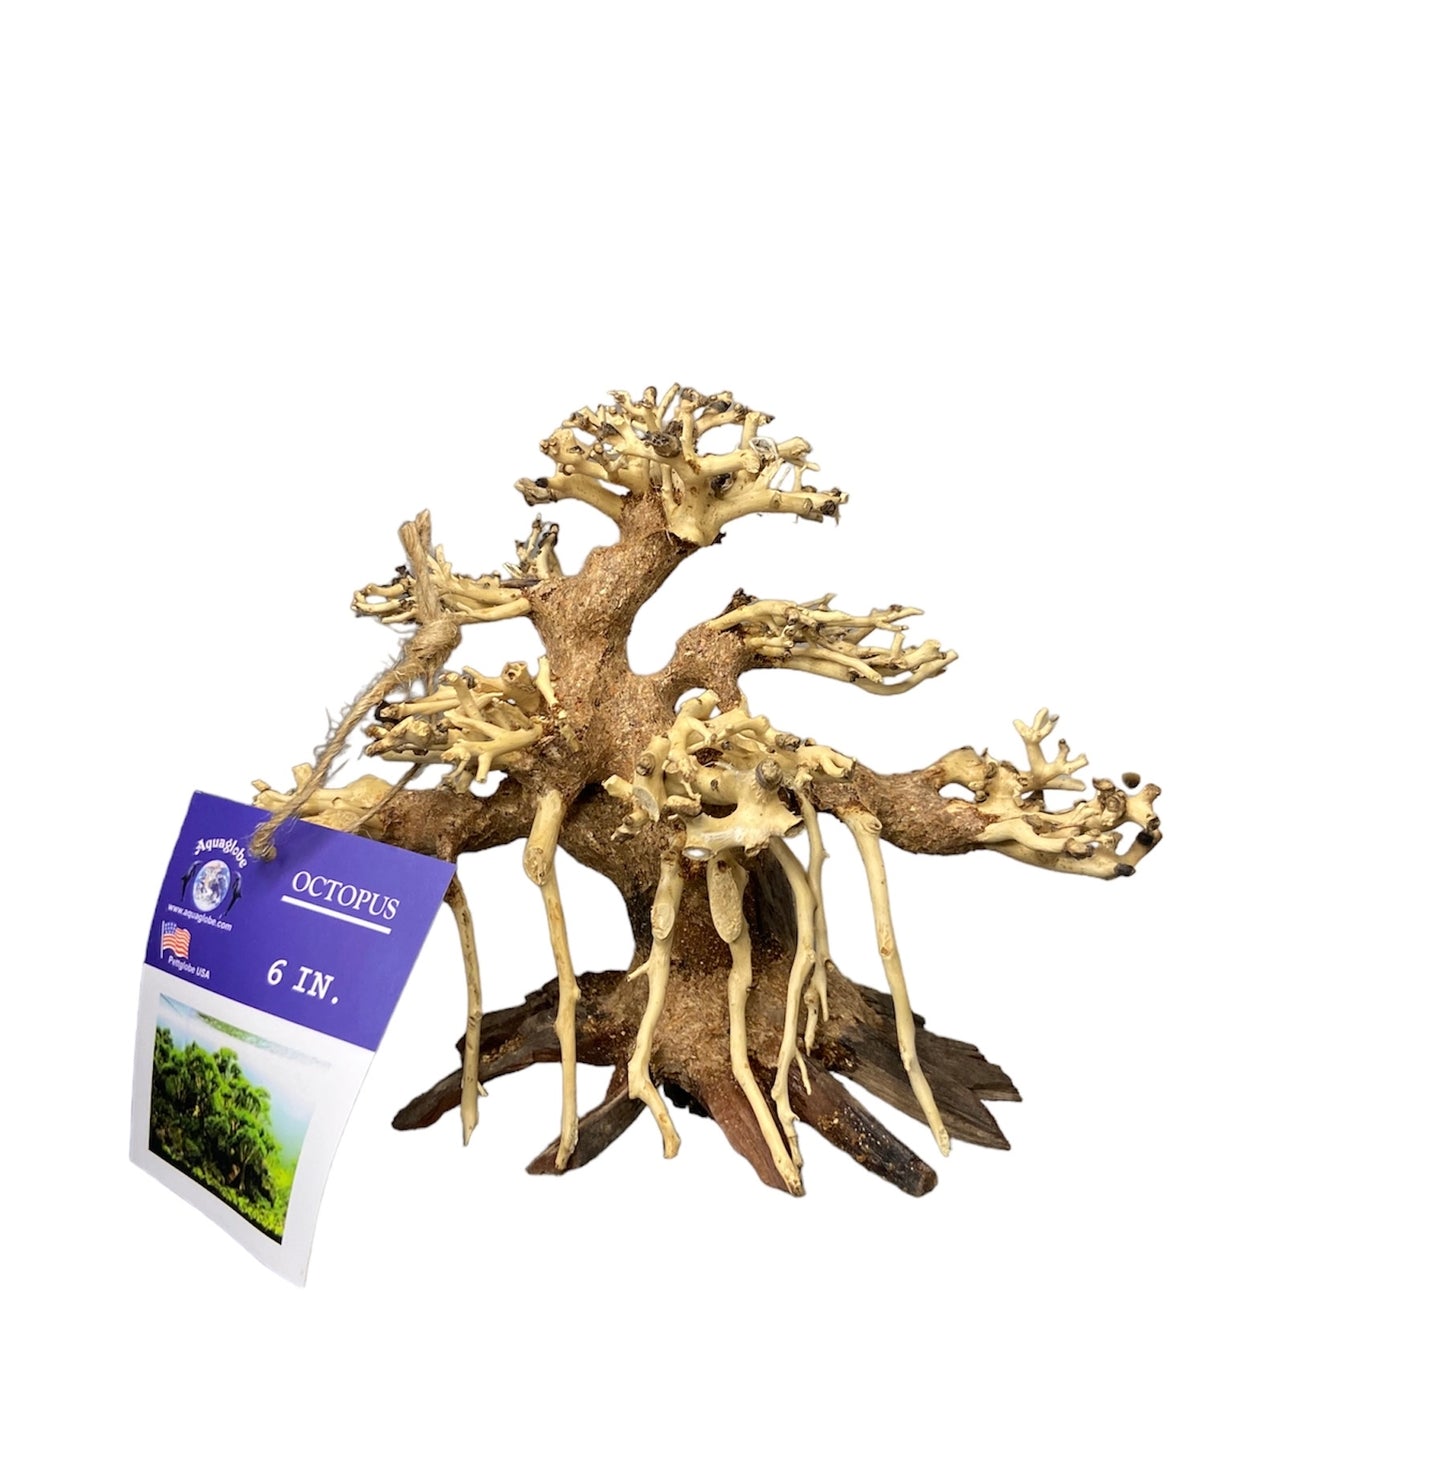 Aquaglobe 6” Octopus bonsai tree